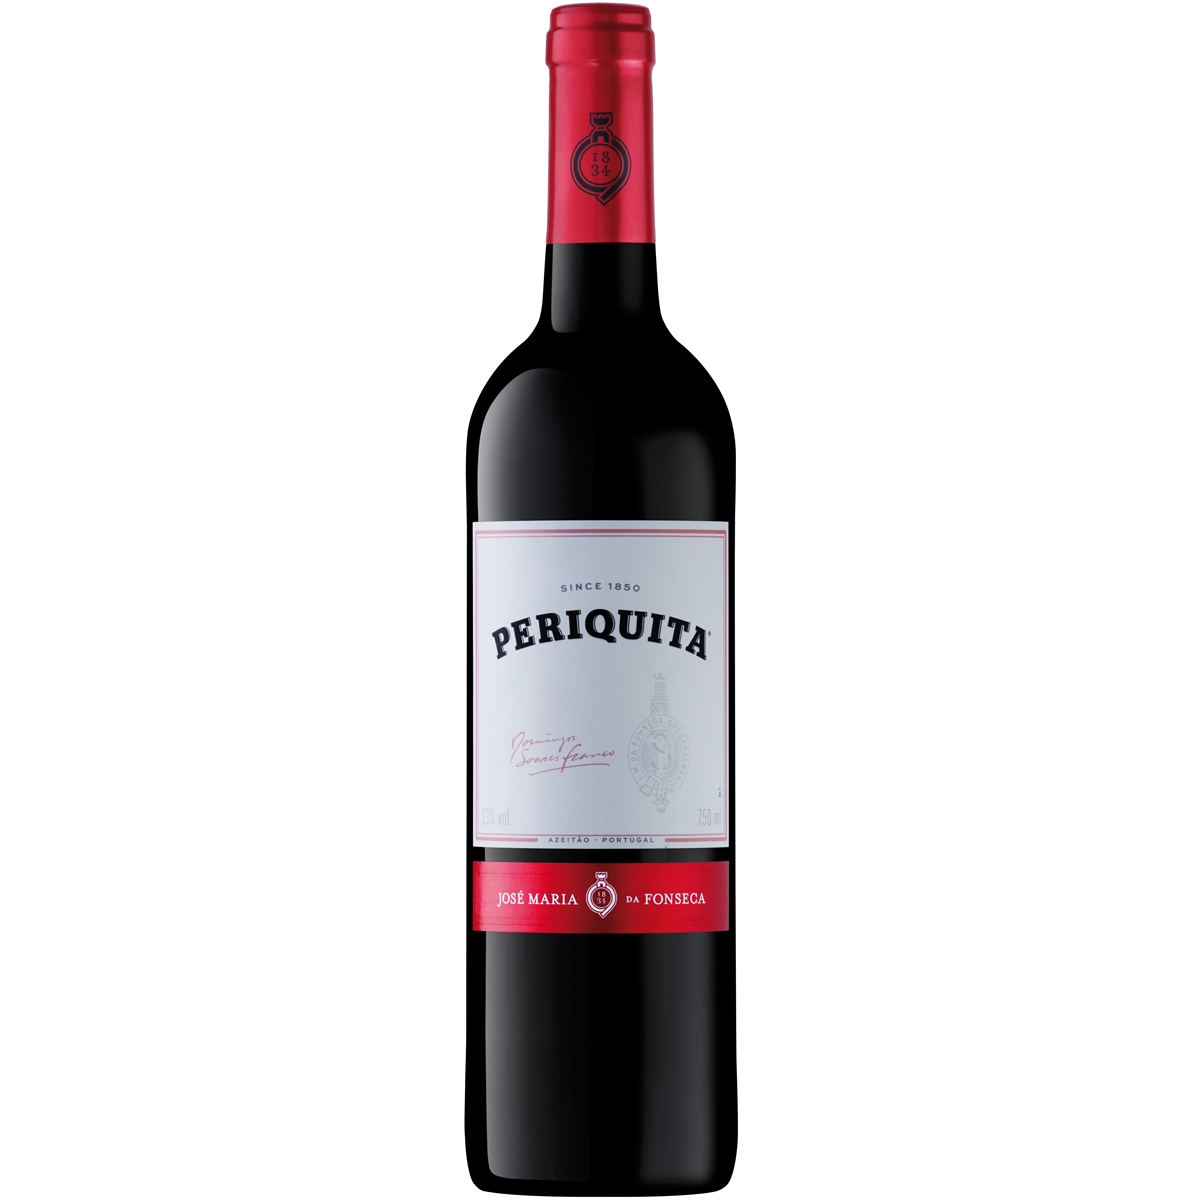 Vinho Periquita Original 750ml